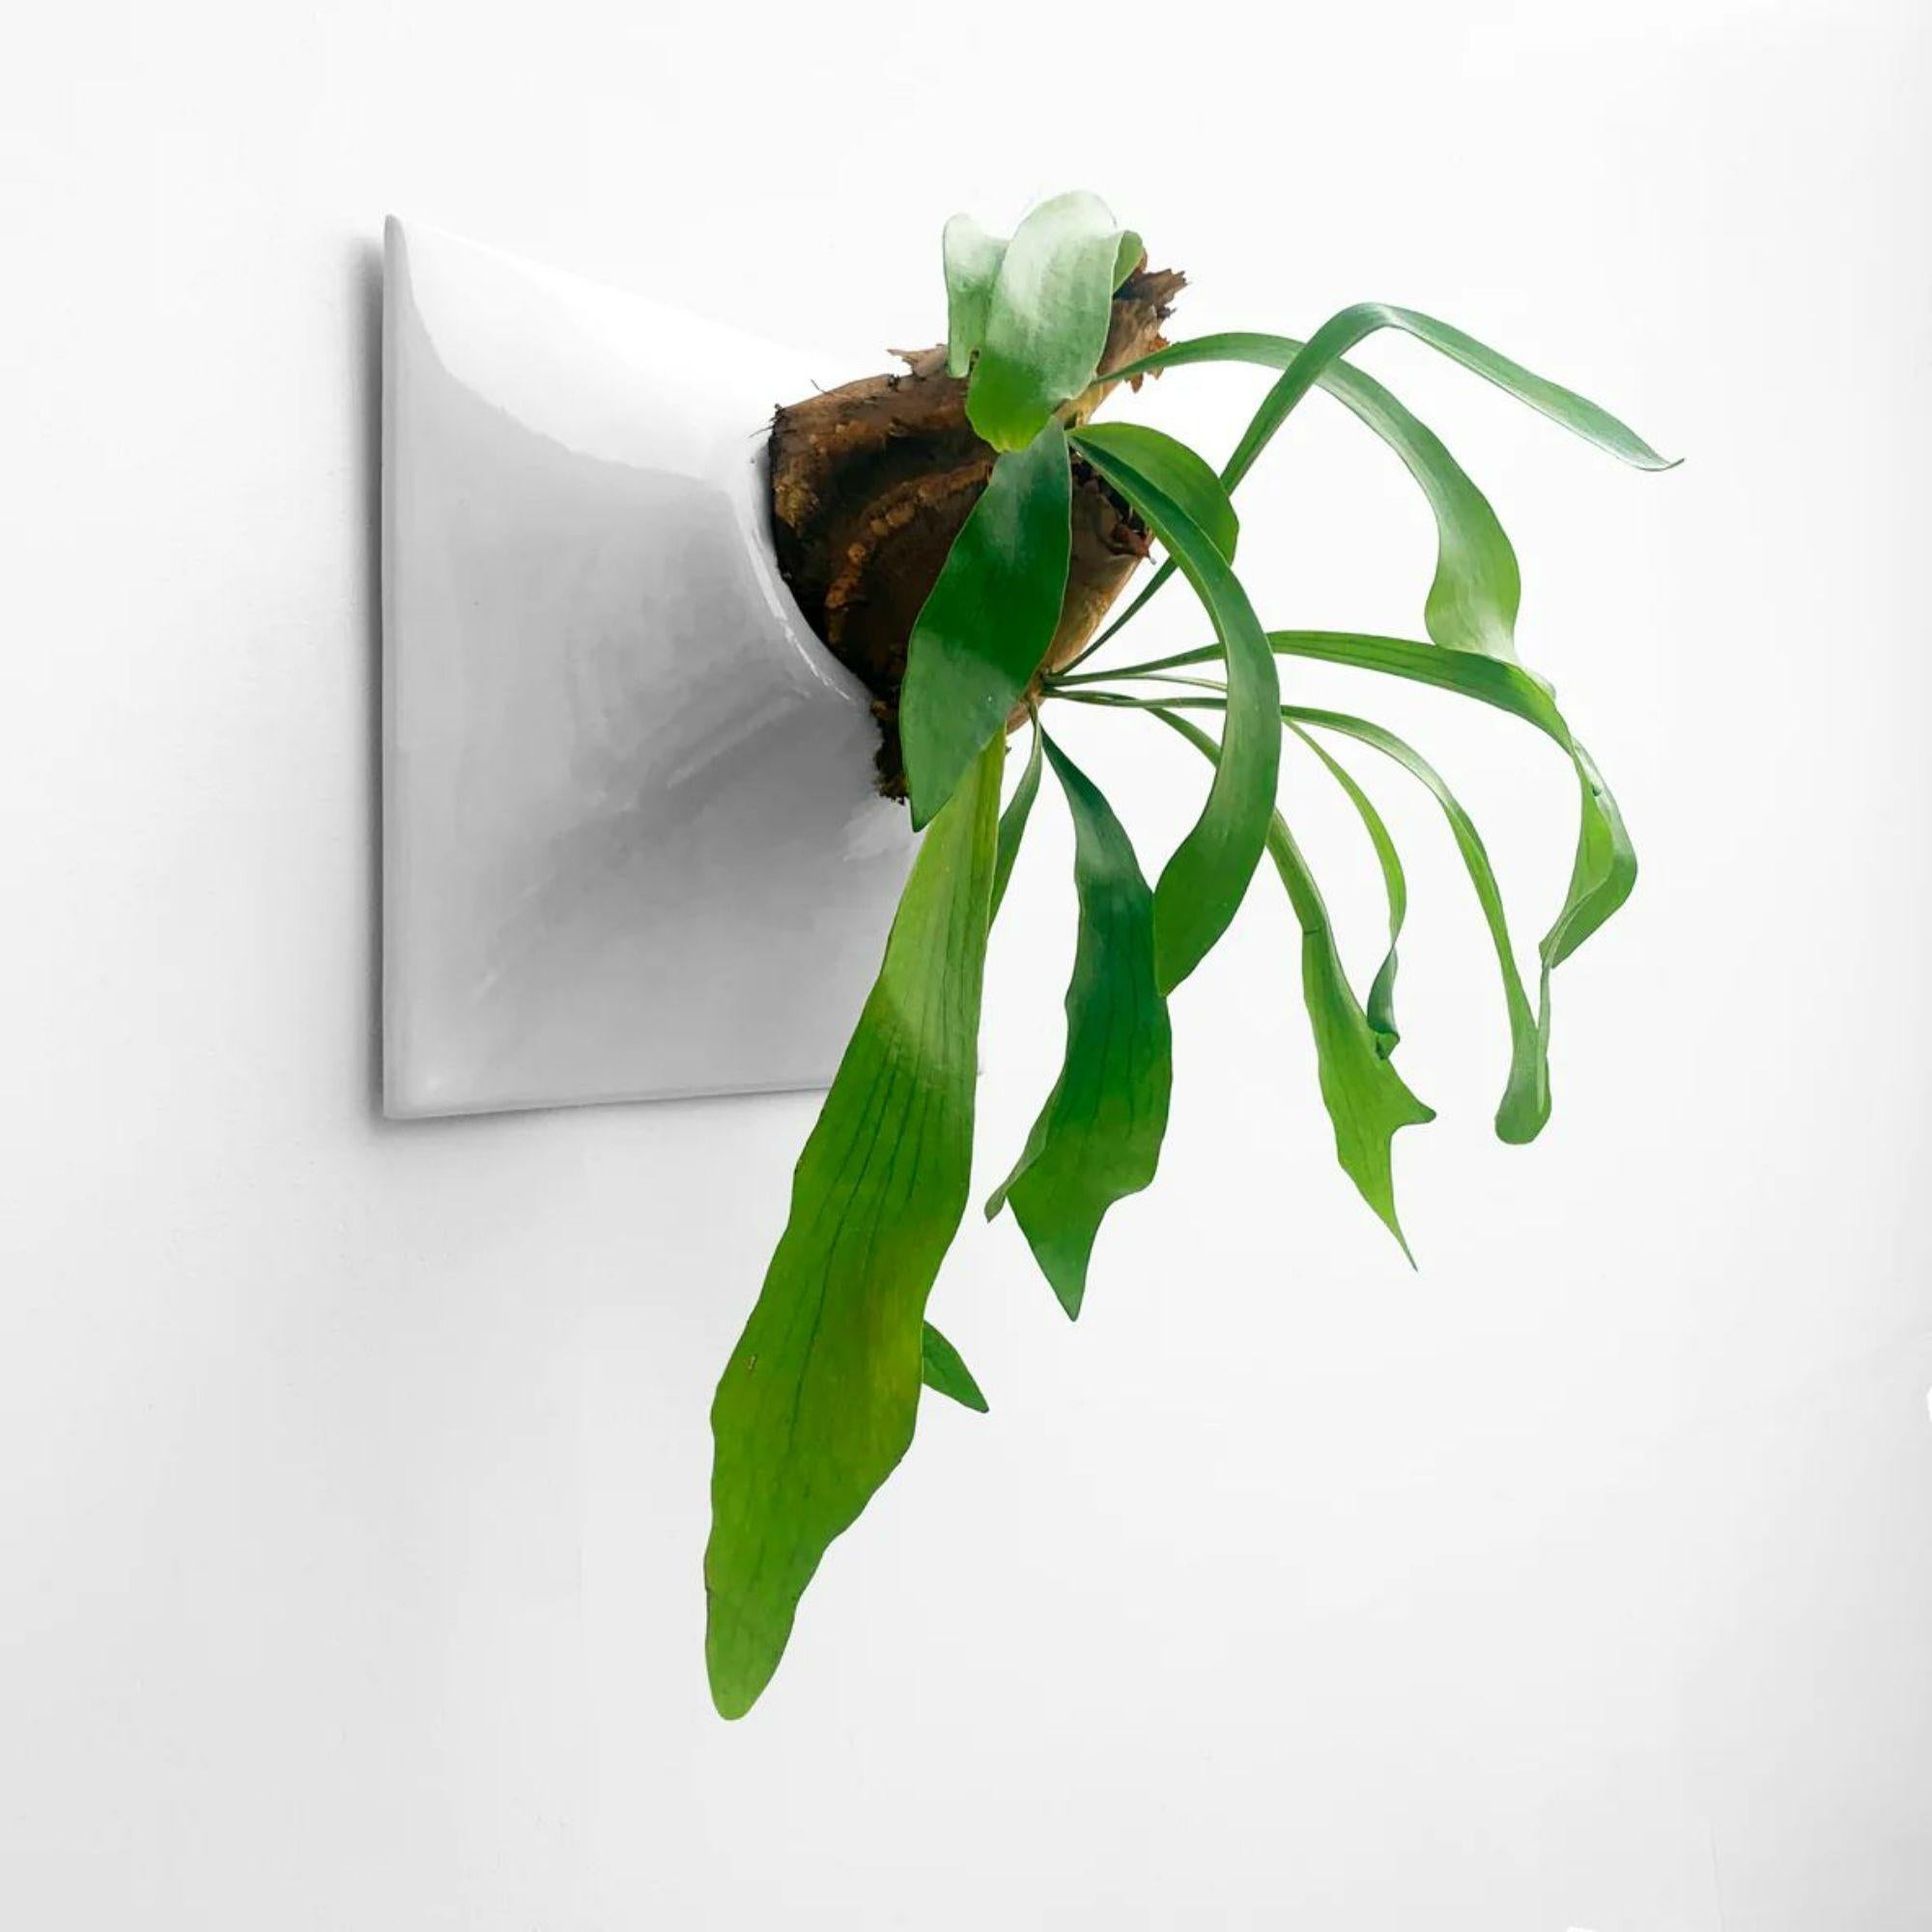 American Modern Gray Wall Planter, Plant Wall Sculpture, Living Decor, Node 15